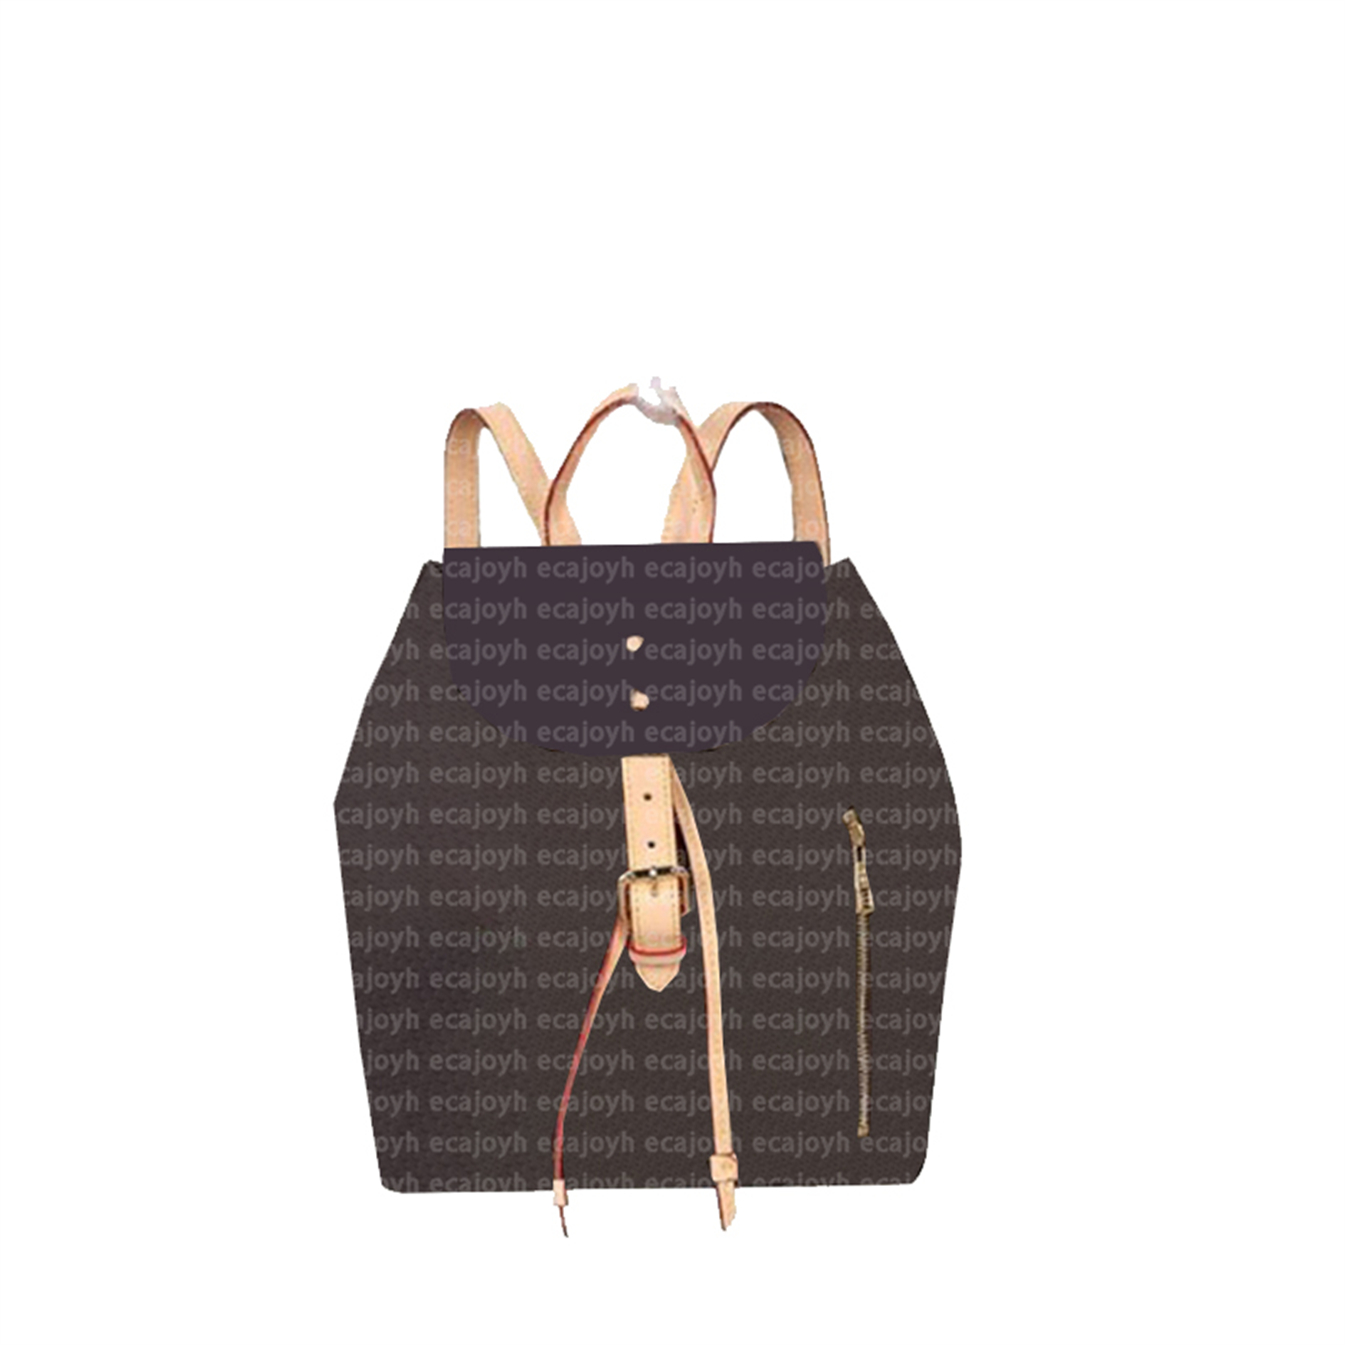 Designer Man Backpack Style Travel Style Multifuncional Rucksack LargeCapacity